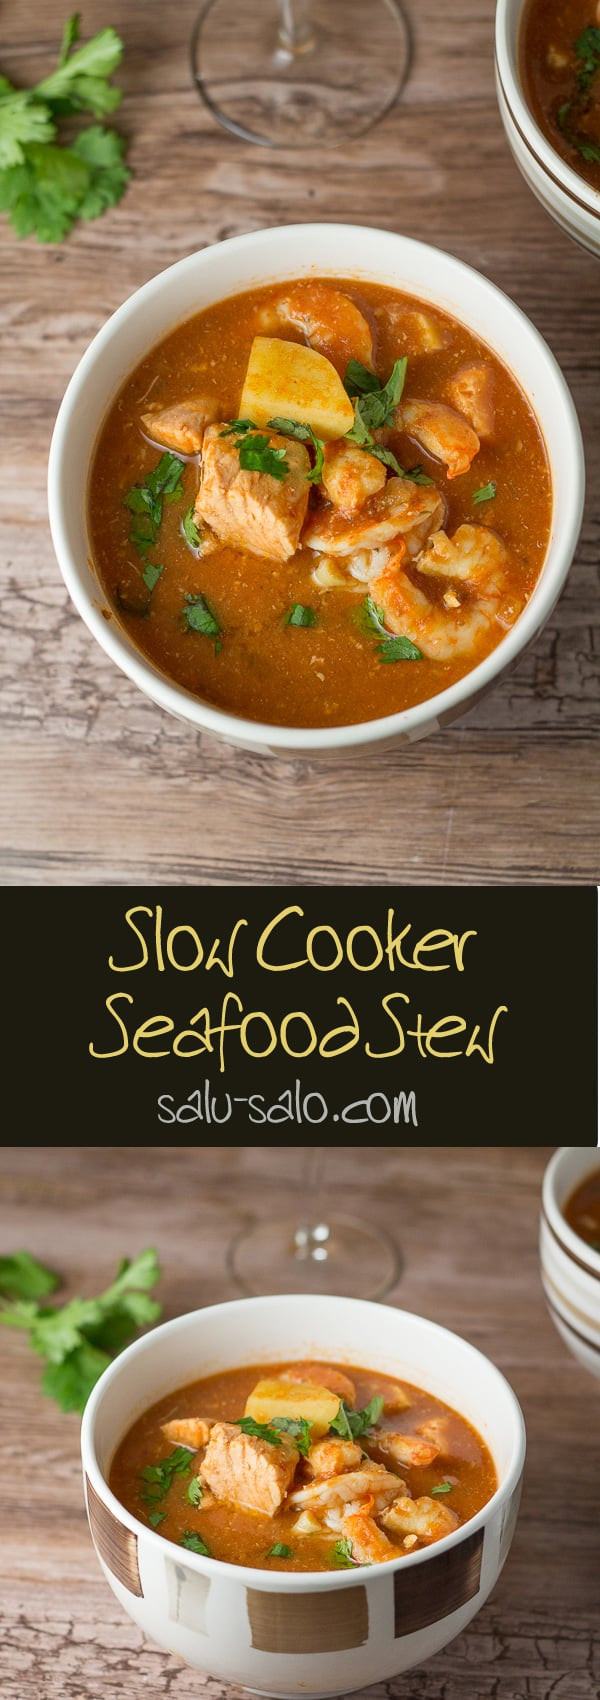 Seafood Stew Slow Cooker
 Slow Cooker Seafood Stew Salu Salo Recipes